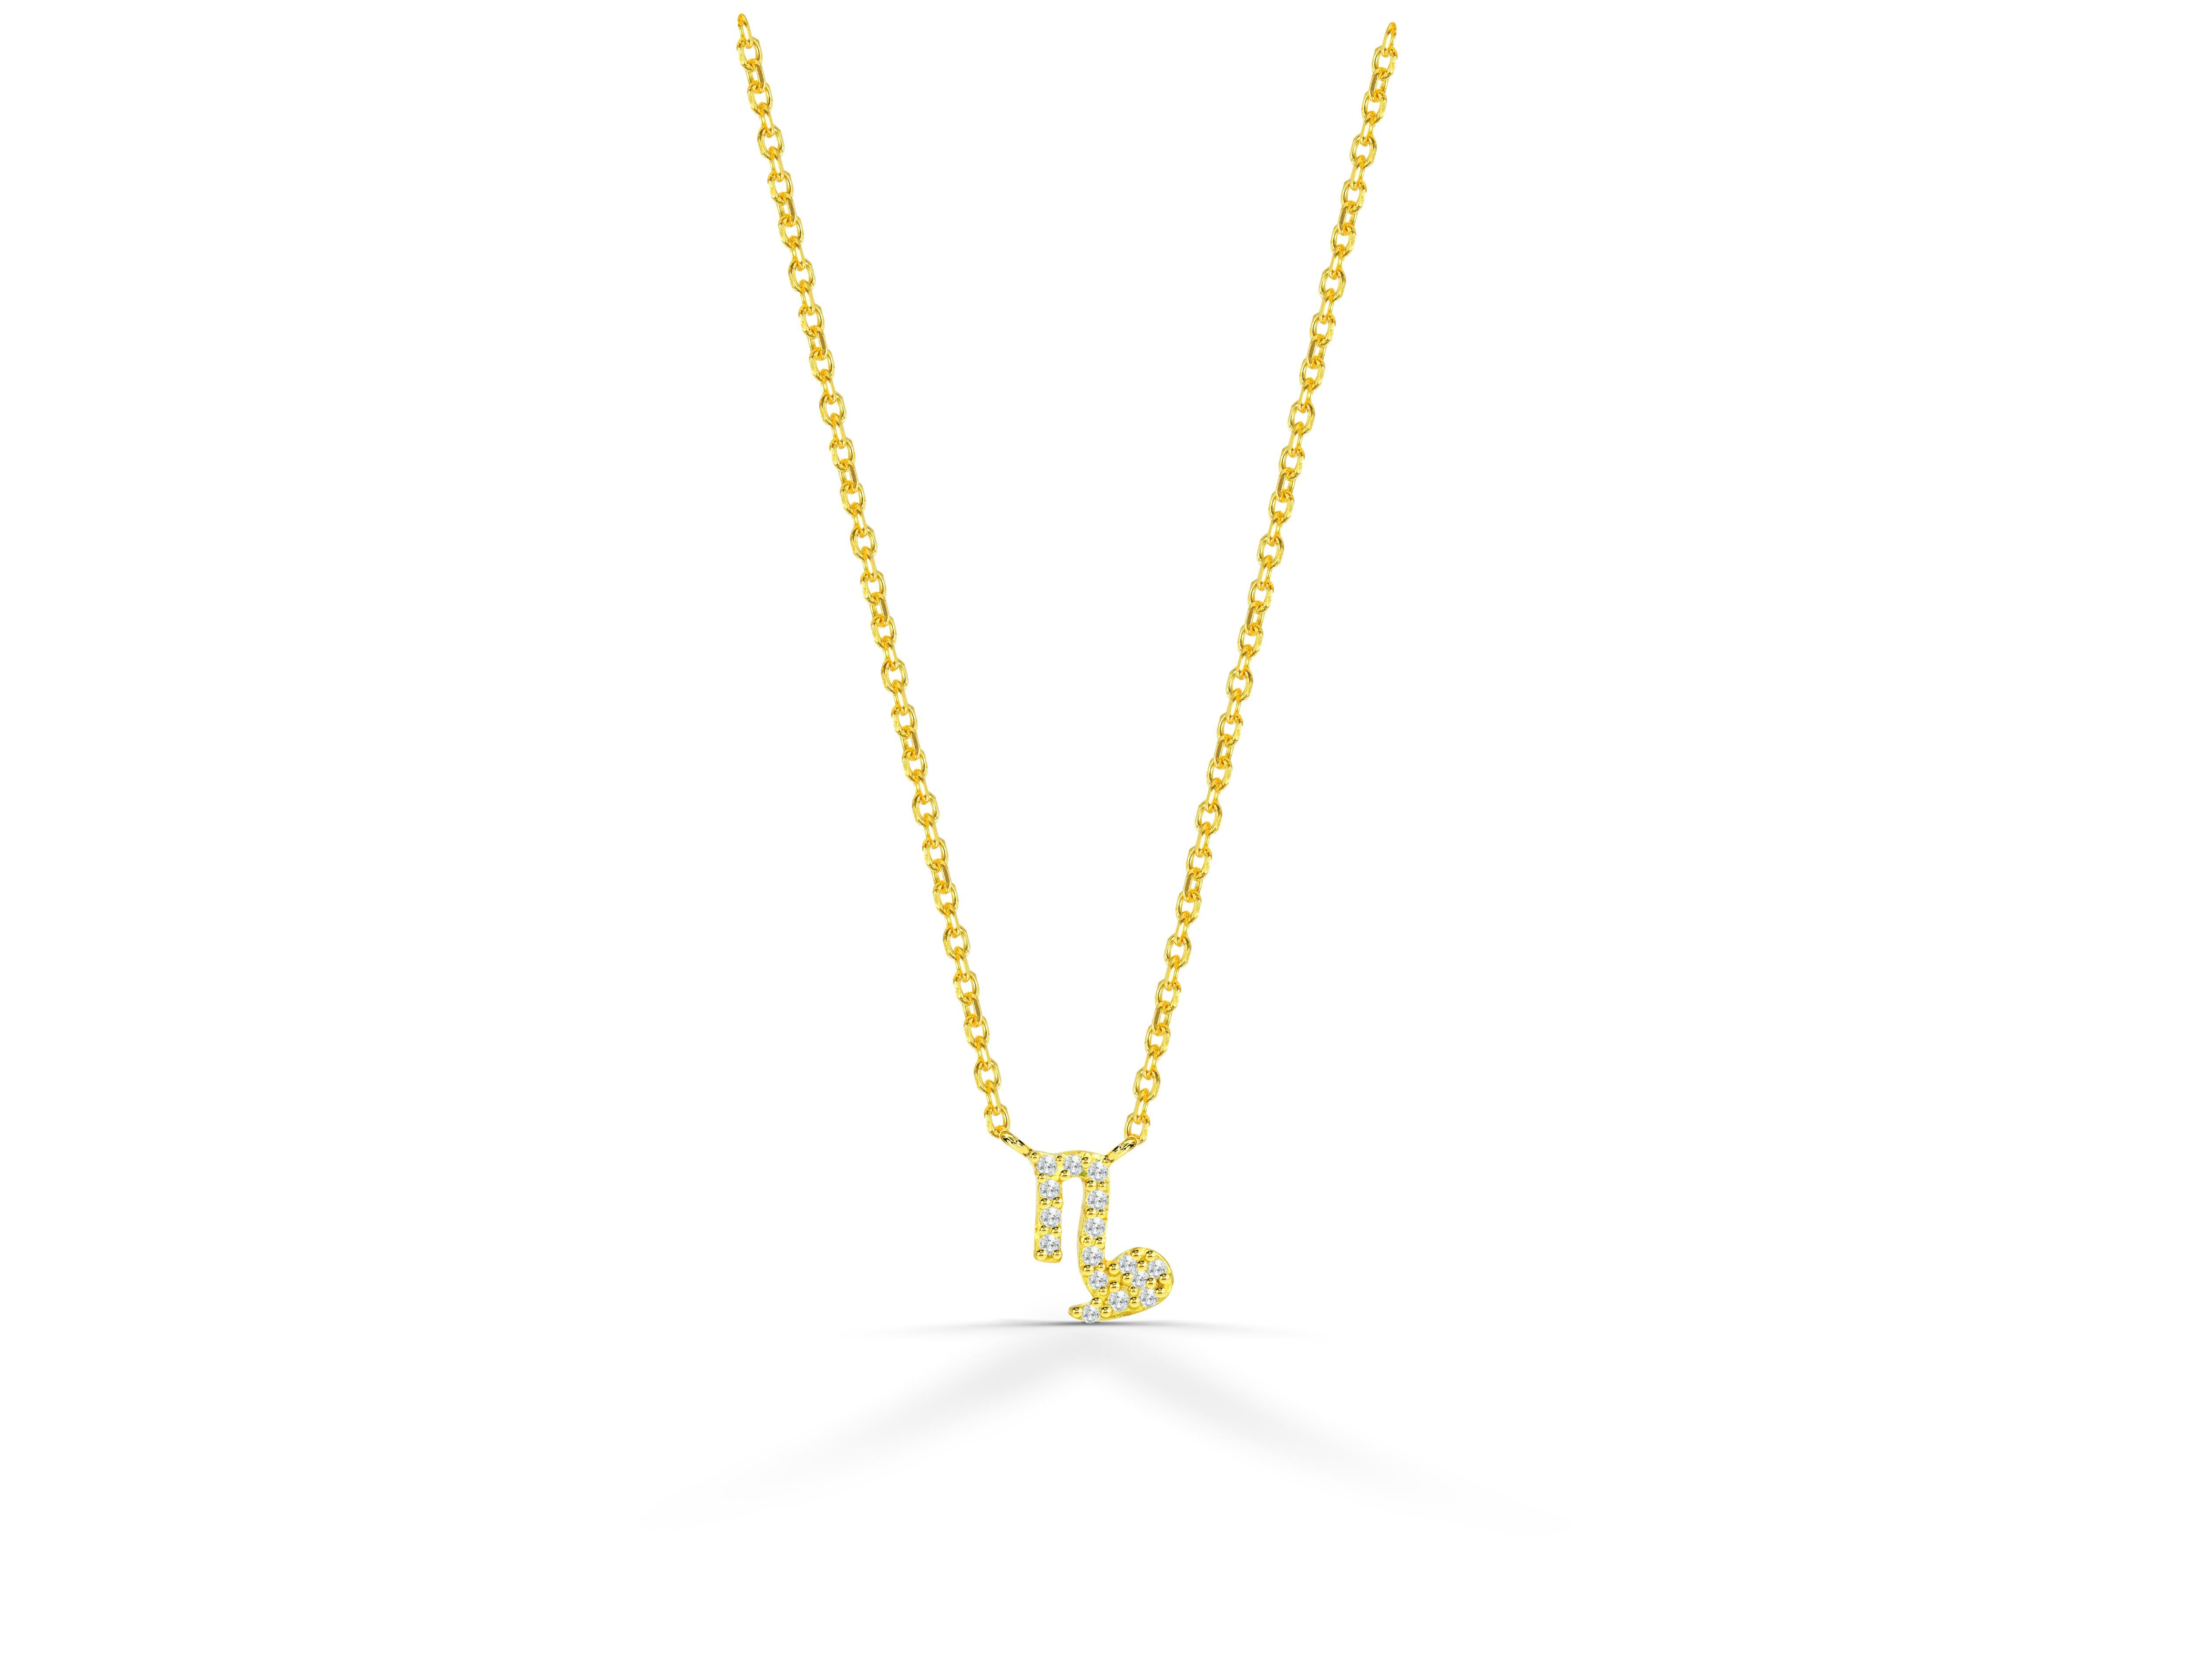 Schöne und Sparkly Diamond Capricorn Halskette ist aus 18k massivem Gold in drei Farben von Gold, Weißgold / Rose Gold / Gelbgold.

Natürlicher, echter, rund geschliffener Diamant - jeder Diamant wird von mir von Hand ausgewählt, um die Qualität zu